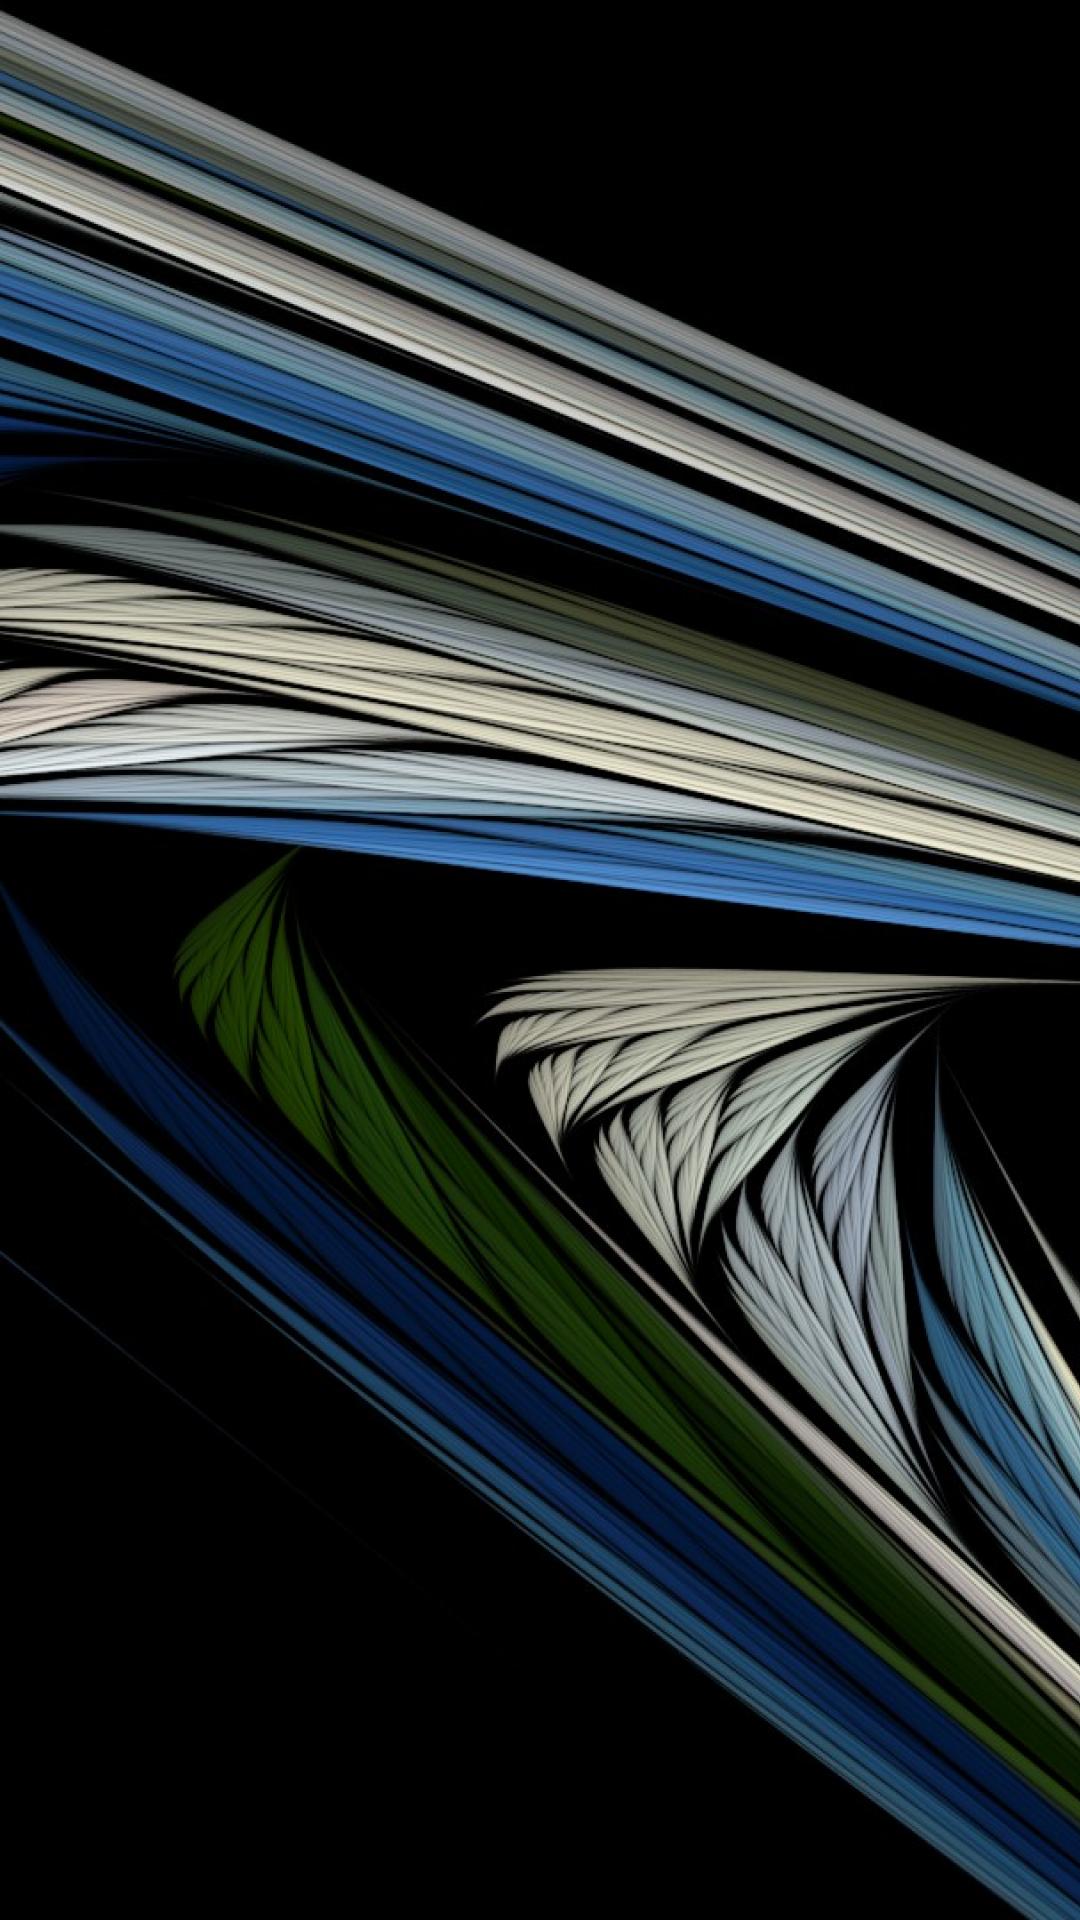  waves black background widescreen fractal art wallpaper 52414 1080x1920